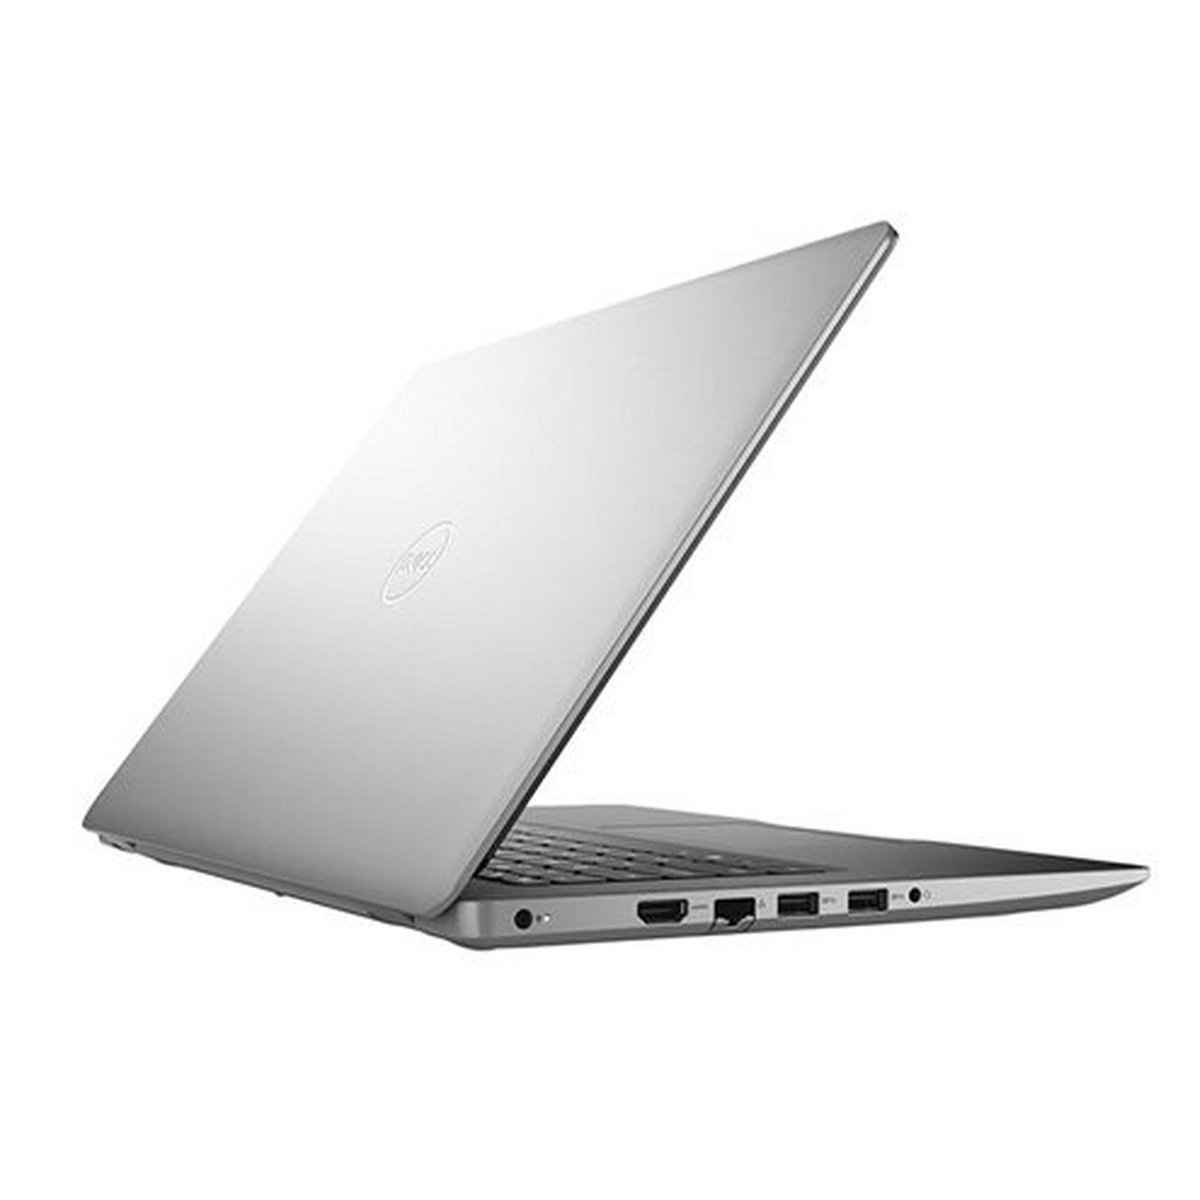 Dell 3493-INS-K0248 Laptop, Core i3, 4GB RAM, 1TB HDD, Intel® HD graphics 620, 14" Full HD Screen, Windows 10, Silver